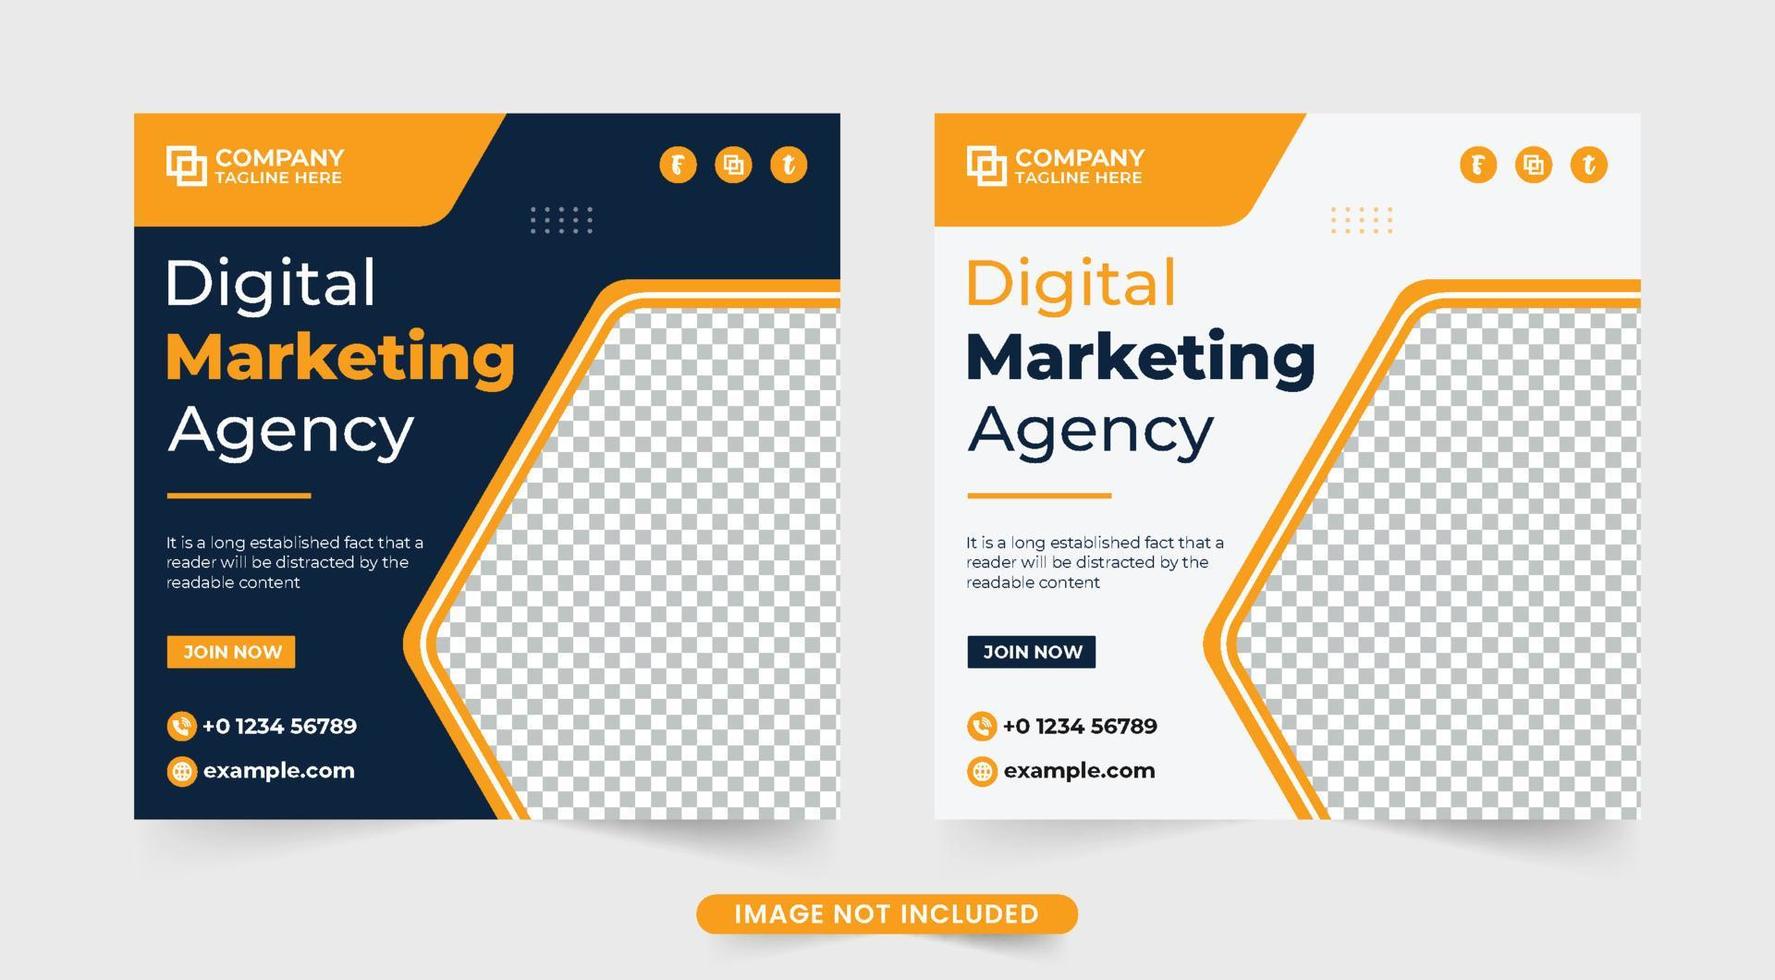 plantilla de agencia de negocios digitales para marketing en redes sociales. banner web de la agencia de marketing corporativo diseñado con colores oscuros y amarillos. vector de plantilla promocional de agencia de negocios.